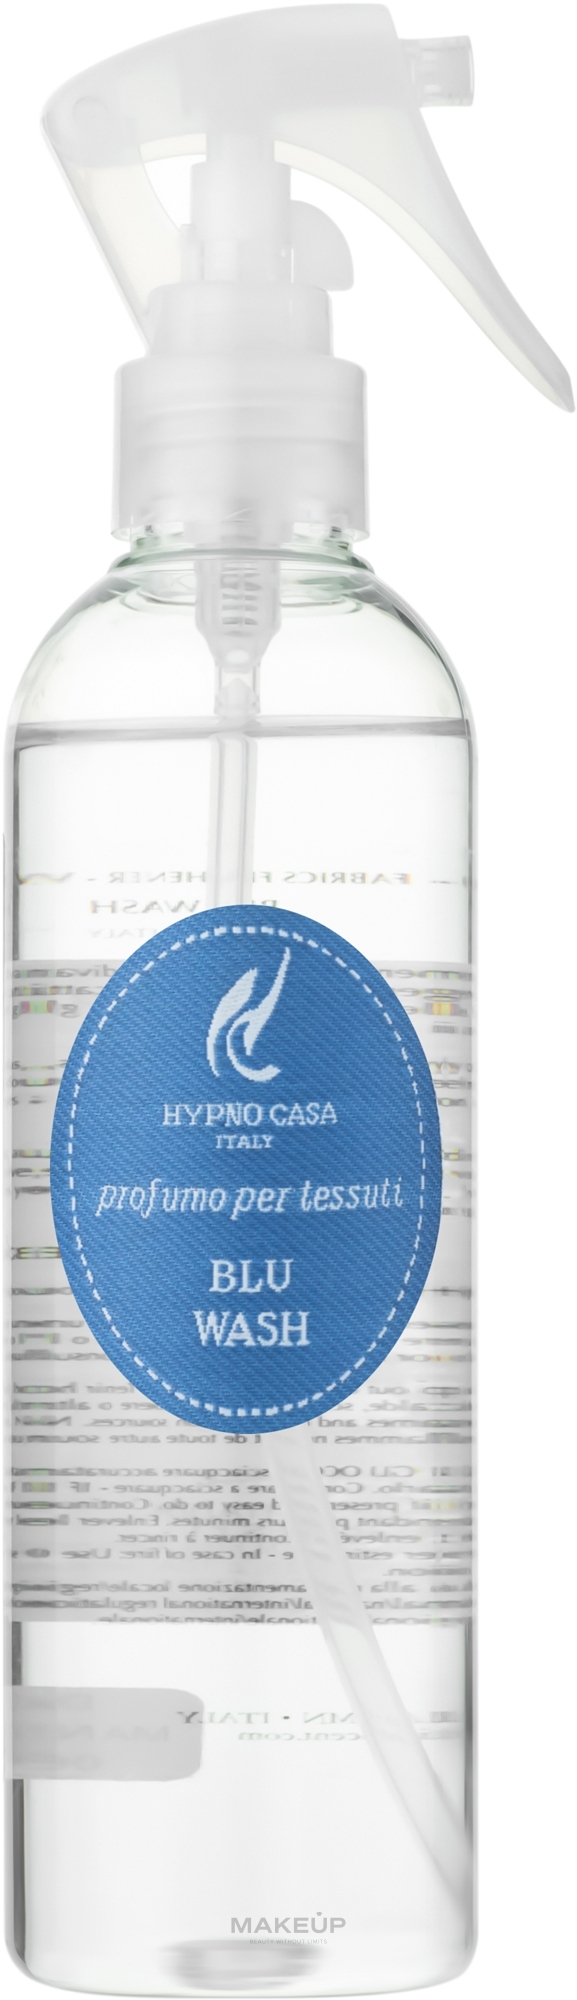 Hypno Casa Blu Wash - Парфюм для текстиля — фото 250ml